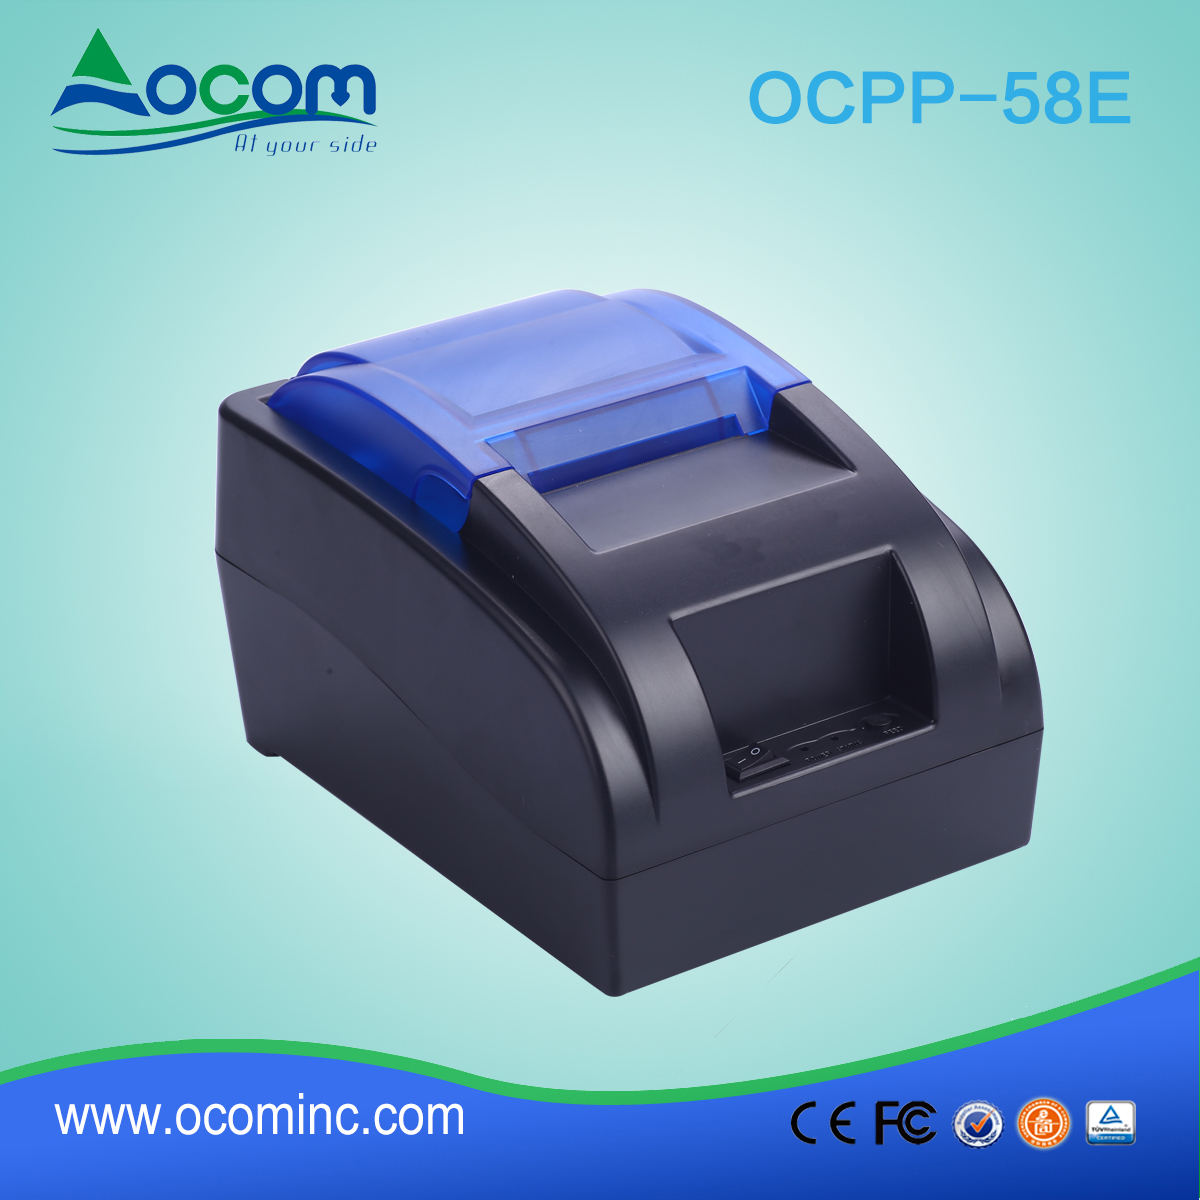 OCPP-58E-China ha realizzato una stampante termica a basso costo da 58 mm